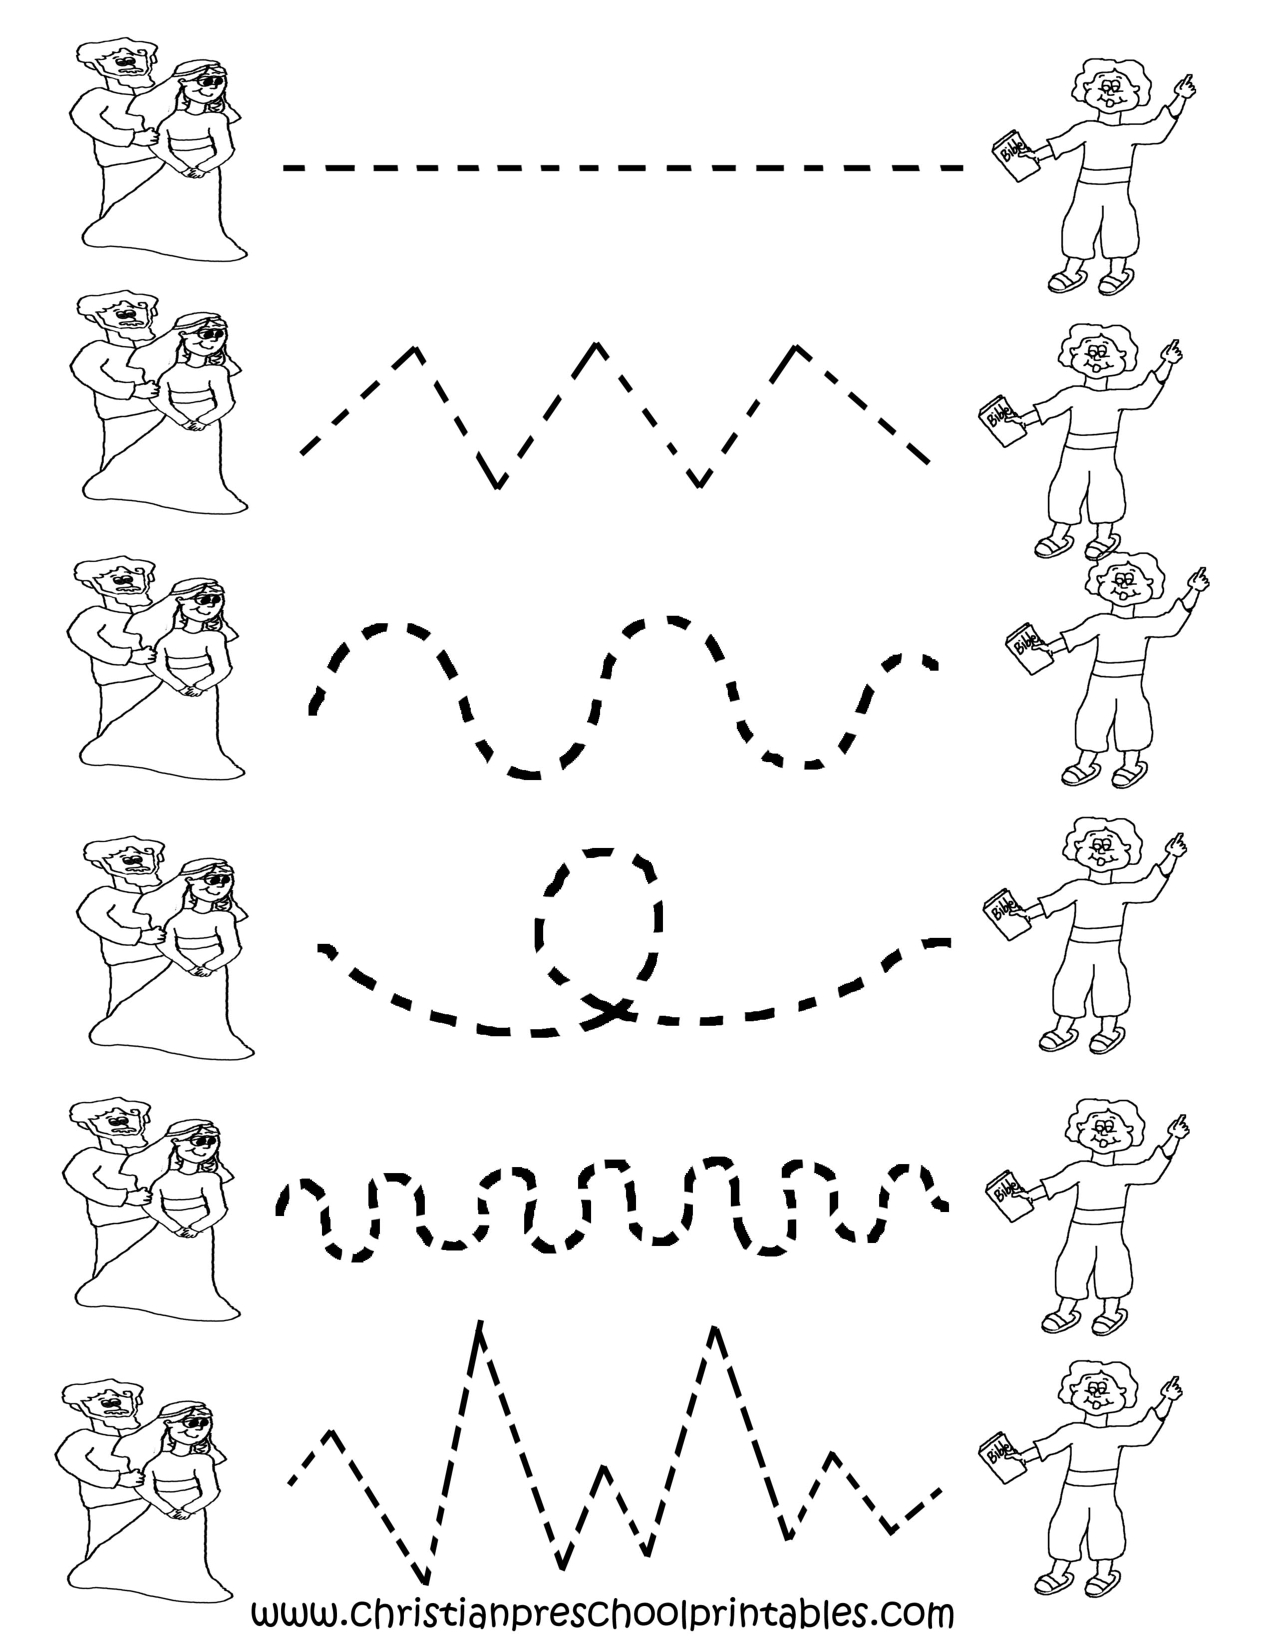 Free Printable Worksheets For Preschool | Preschool Tracing - Free Printable Tracing Worksheets